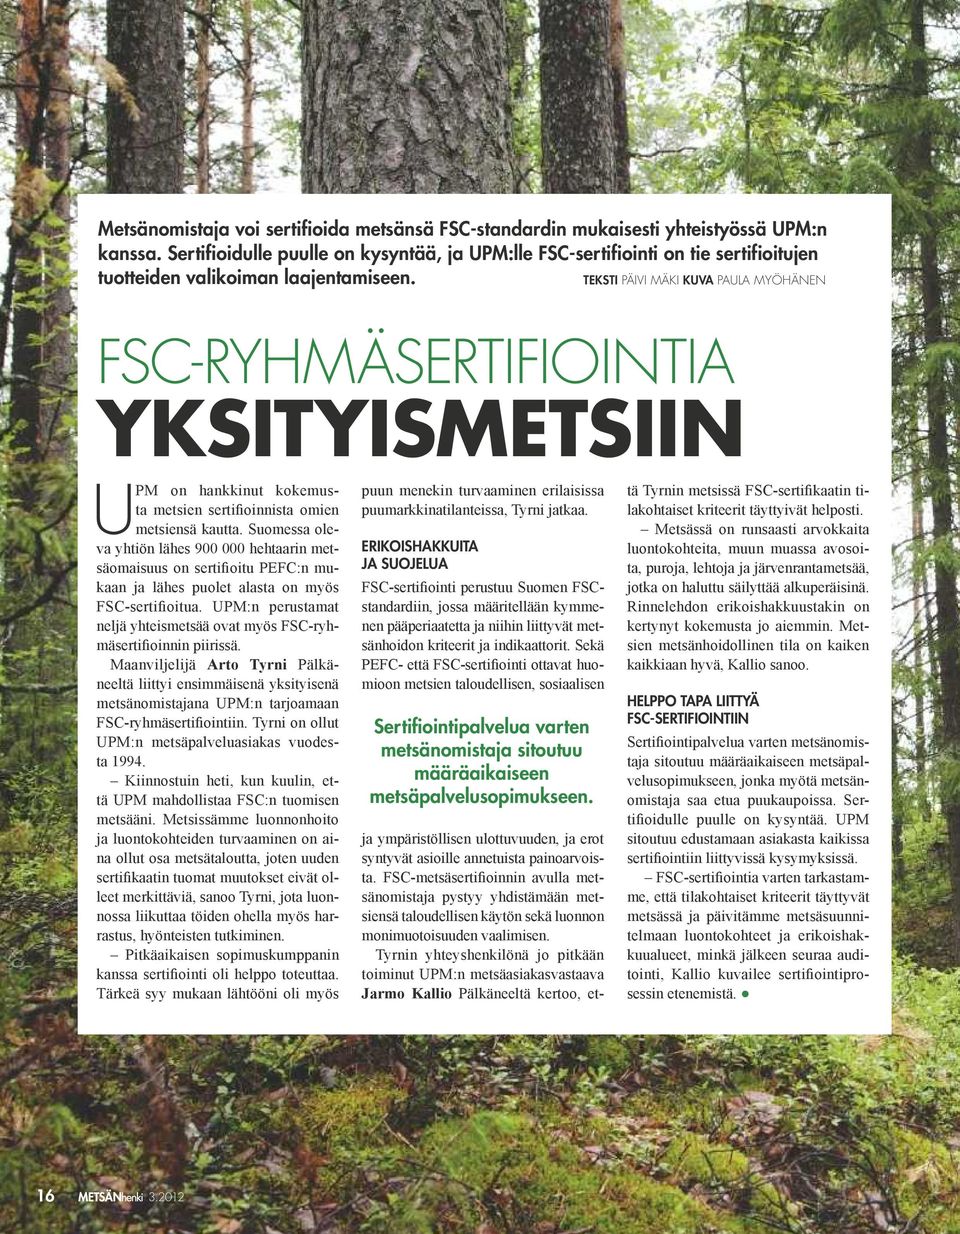 teksti Päivi mäki kuva PaUla myöhänen FSC-ryhmäSertiFiointia yksityismetsiin UPM on hankkinut kokemusta metsien sertifioinnista omien metsiensä kautta.